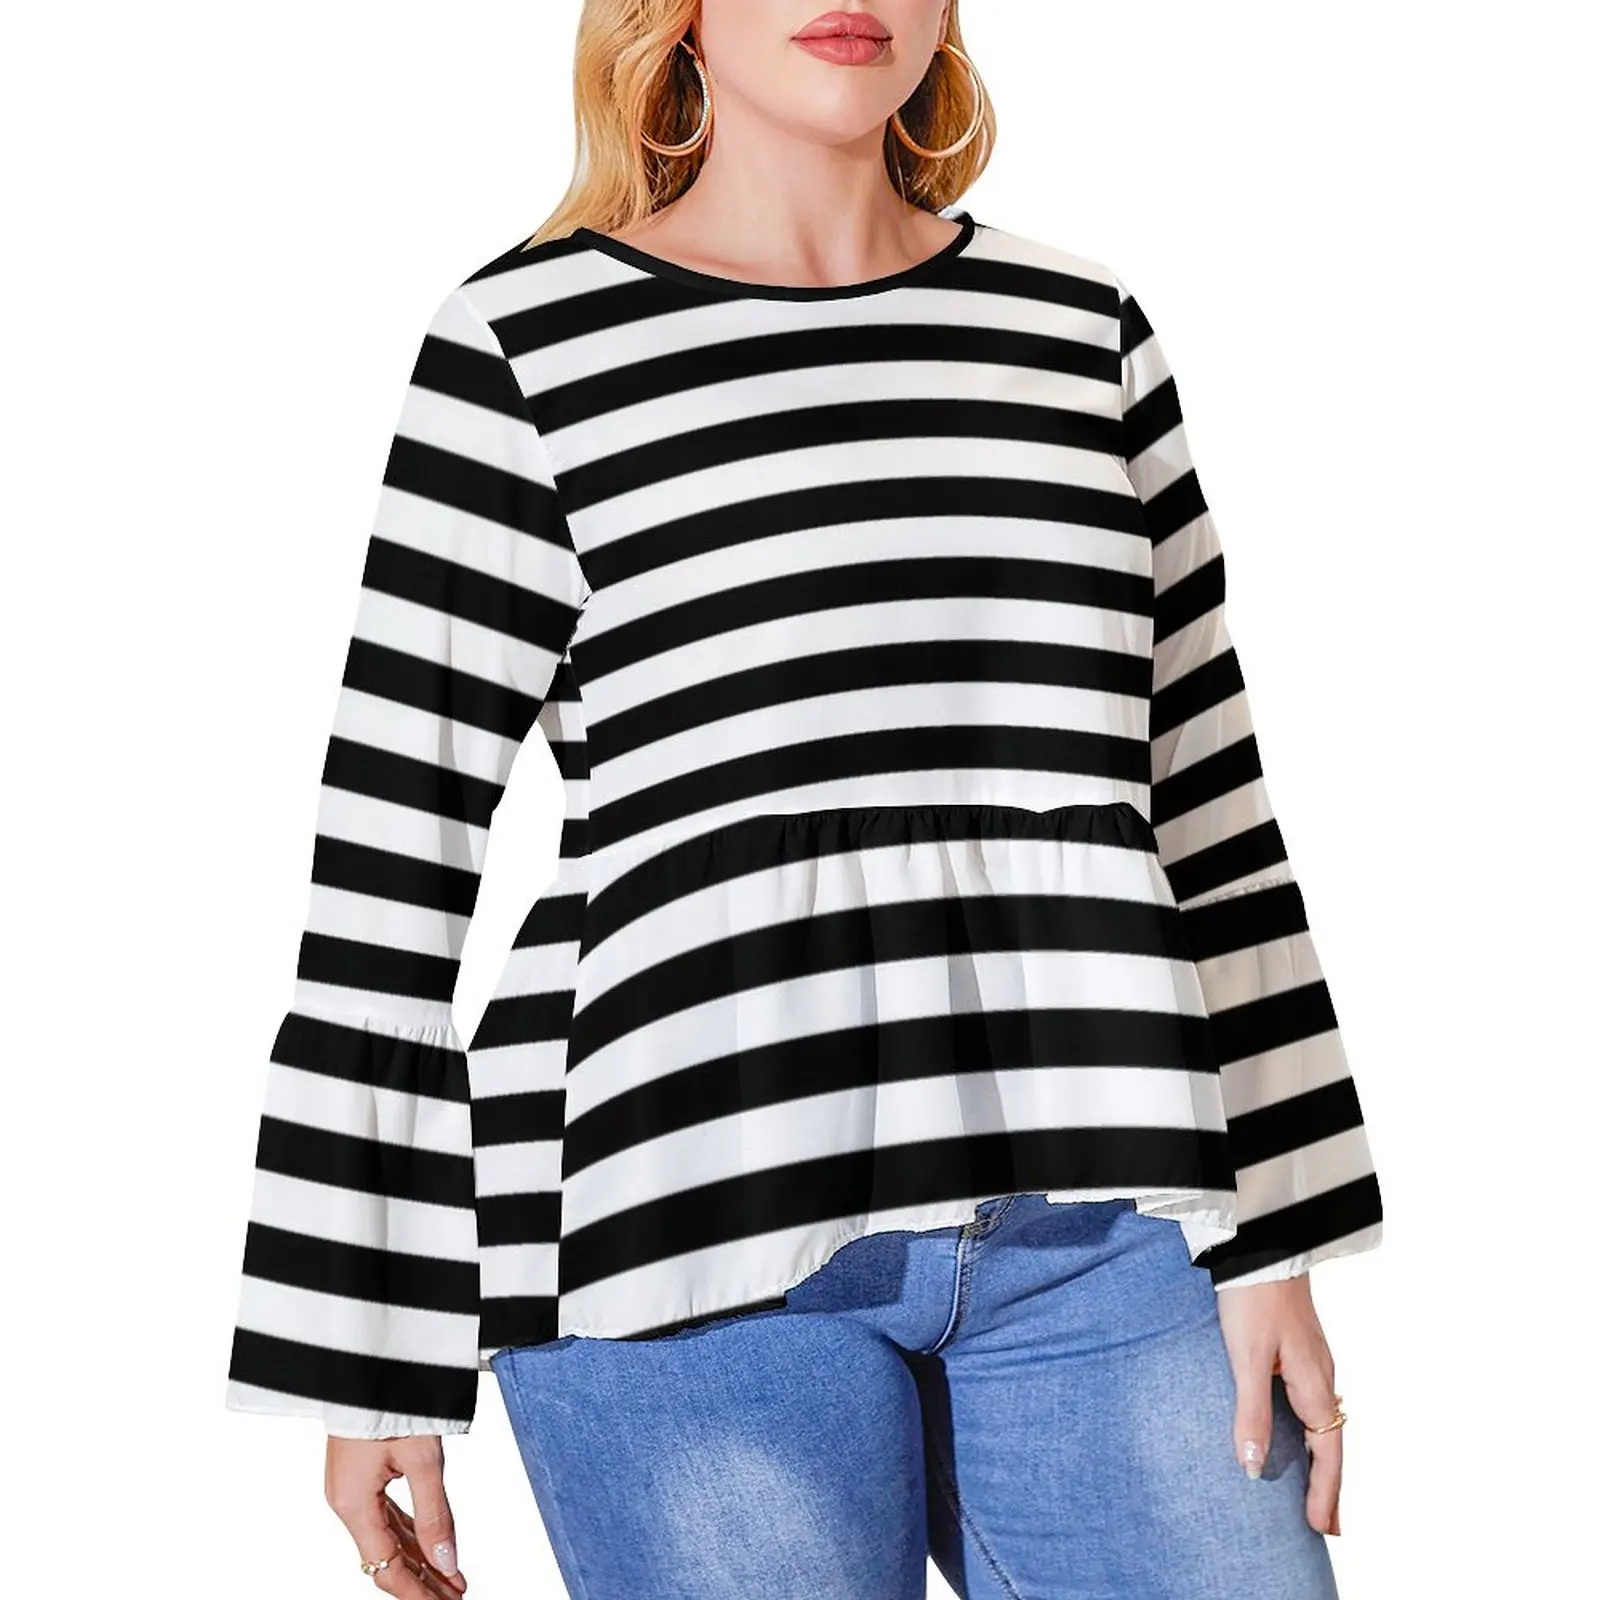 

Classic Striped Vintage T Shirt Horizontal Black Stripes Pretty Ruffled T Shirts Lady Korean Fashion Tshirt Plus Size Print Tops